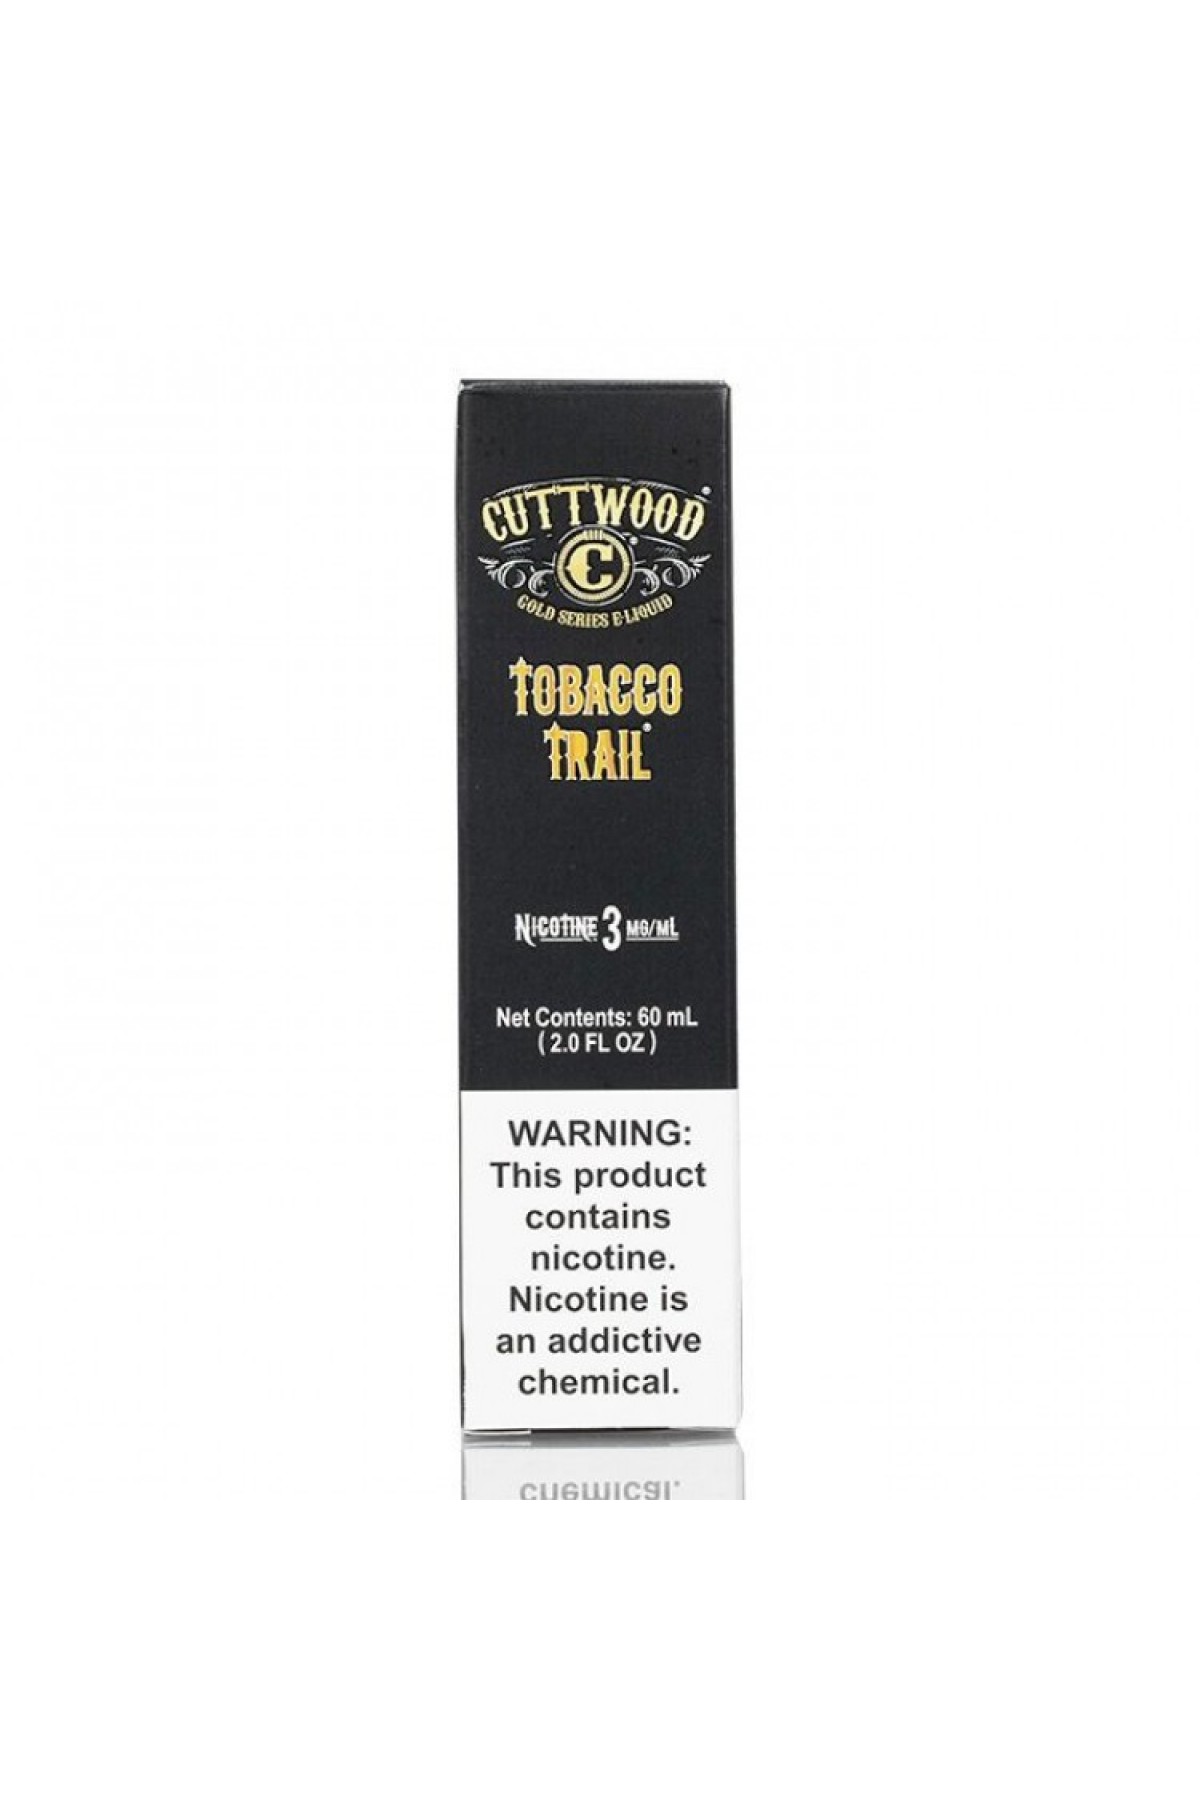 CuttWood Tobacco Trail 60ML